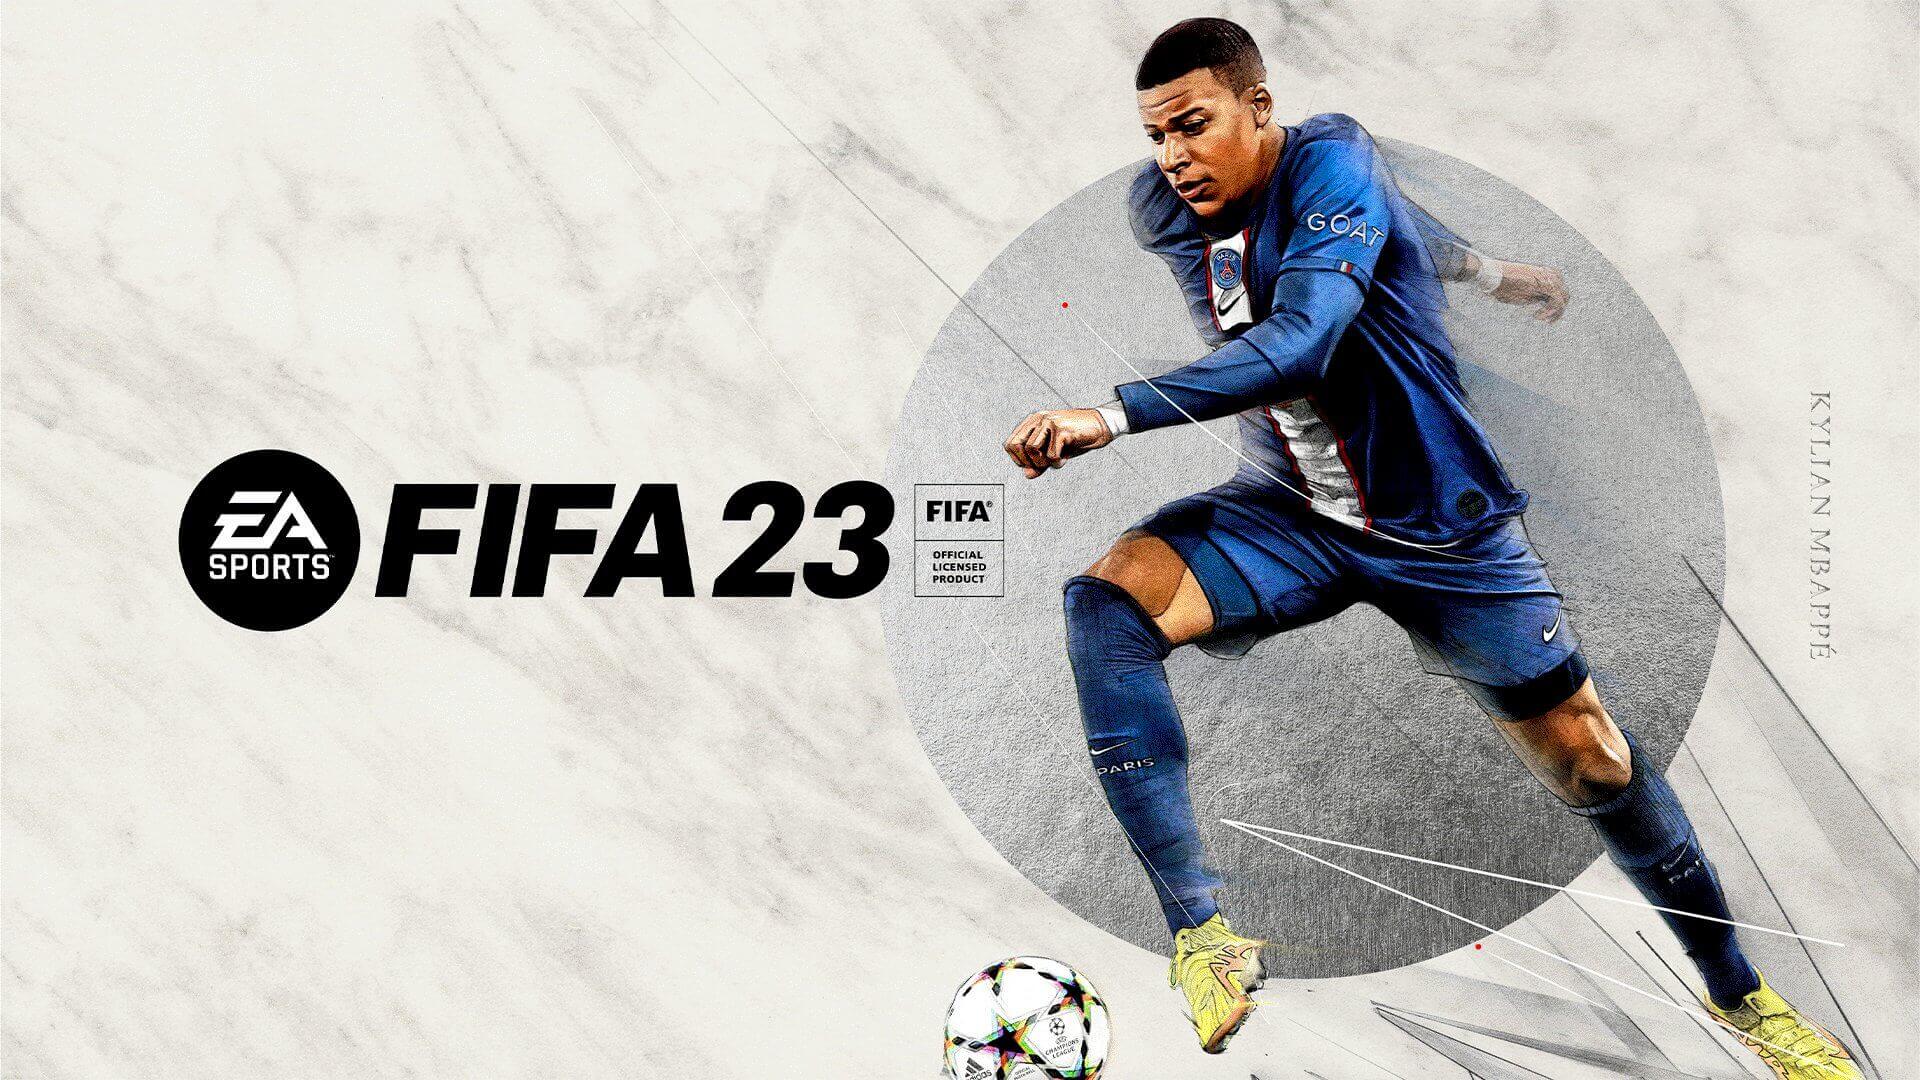 FIFA 23 debuta en la cima de las ventas del Reino Unido; superó a su predecesor